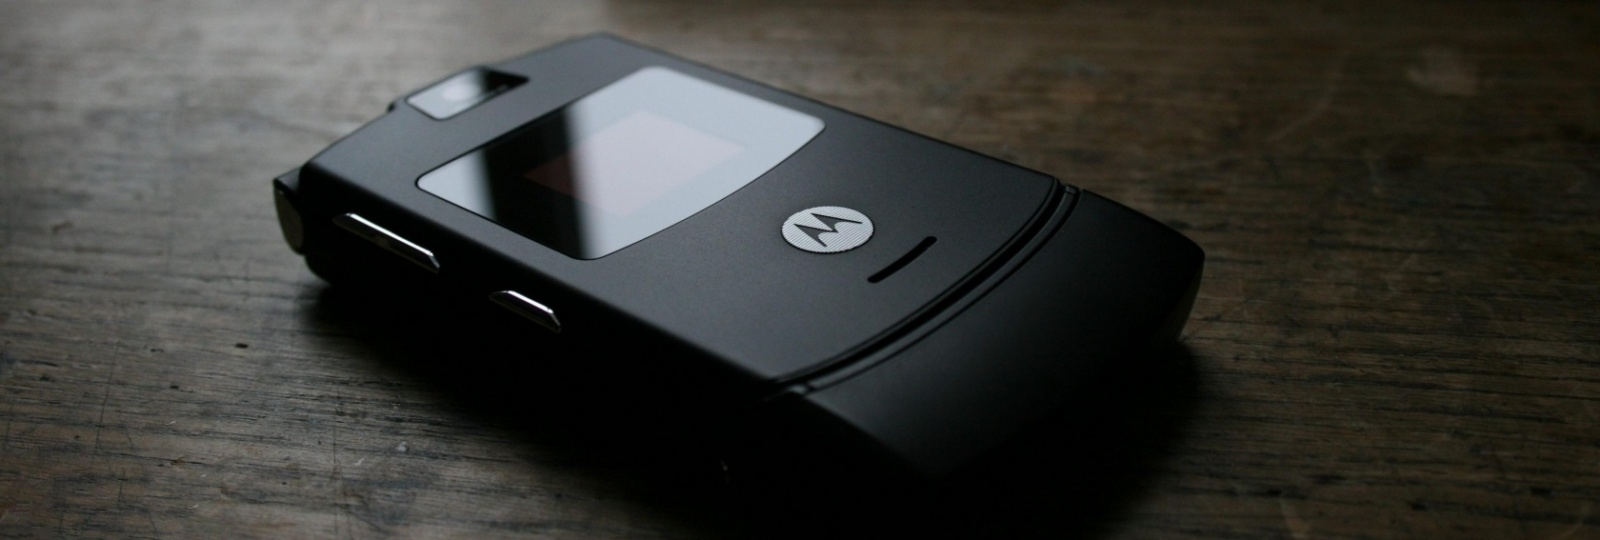 После Nokia 3310 возродиться может еще одна легенда — Motorola Razr V3 - 1